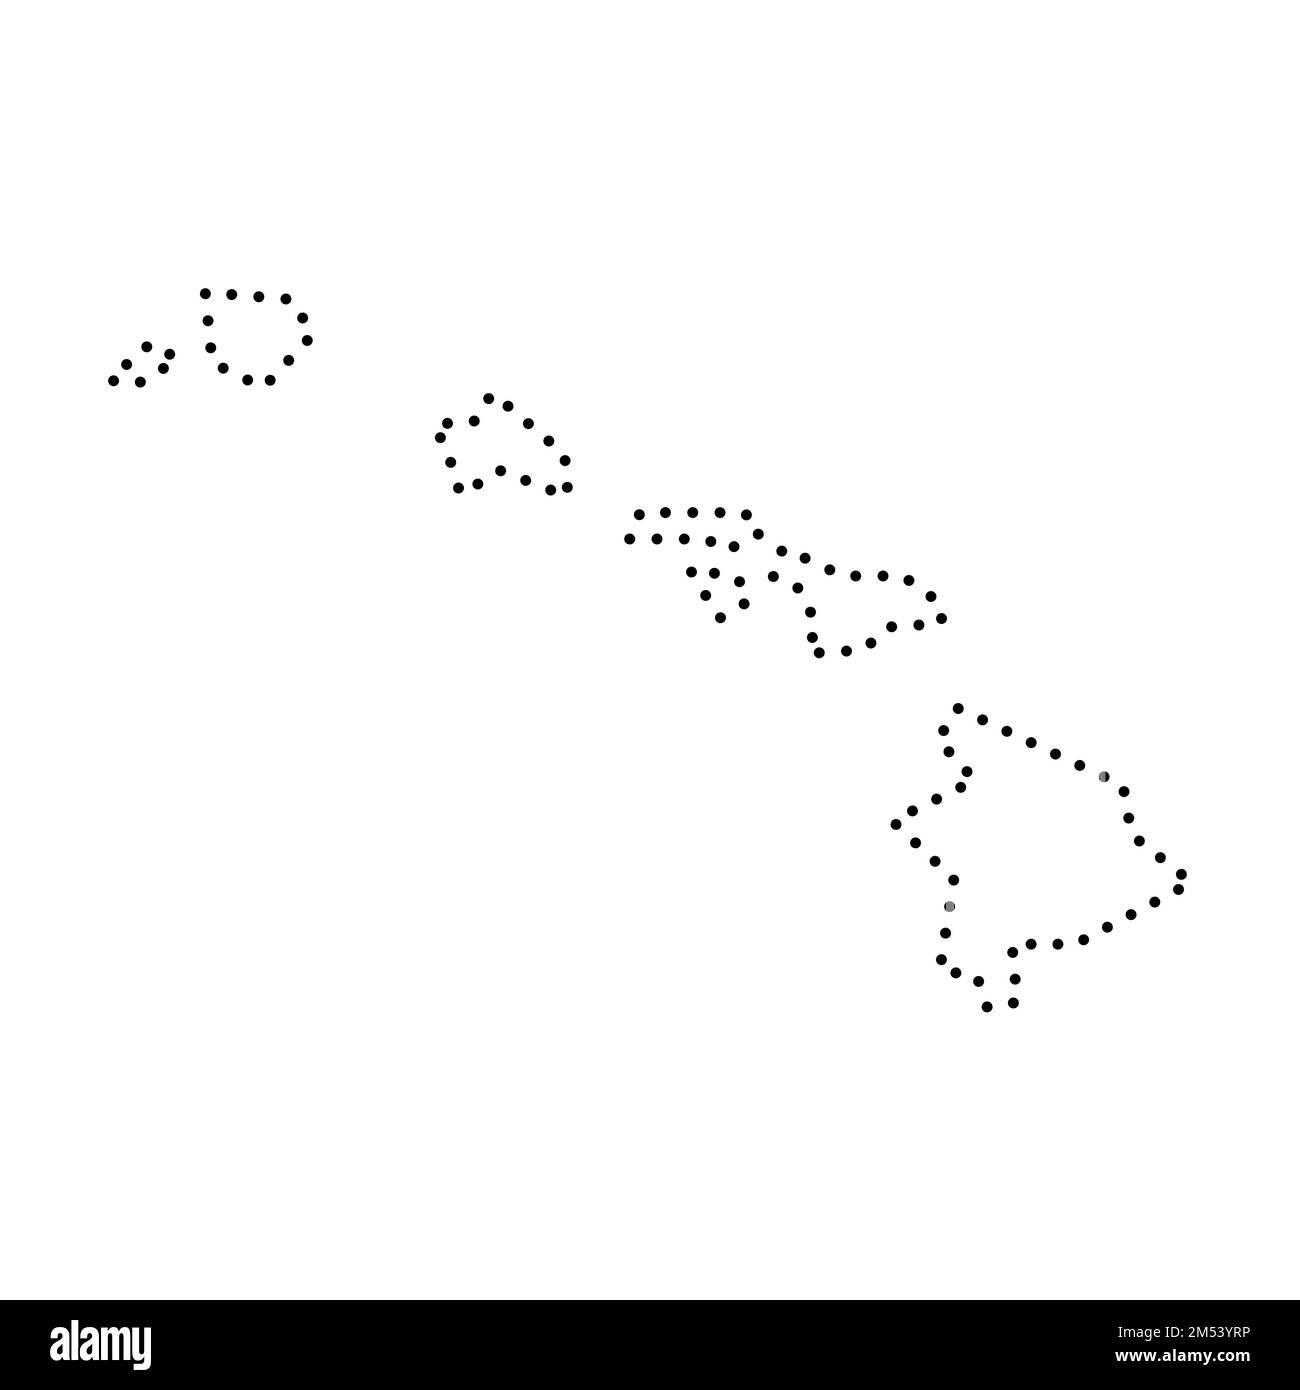 Hawaii Staat der Vereinigten Staaten von Amerika, USA. Vereinfachte dicke schwarze Umrisskarte. Einfache flache Vektordarstellung Stock Vektor